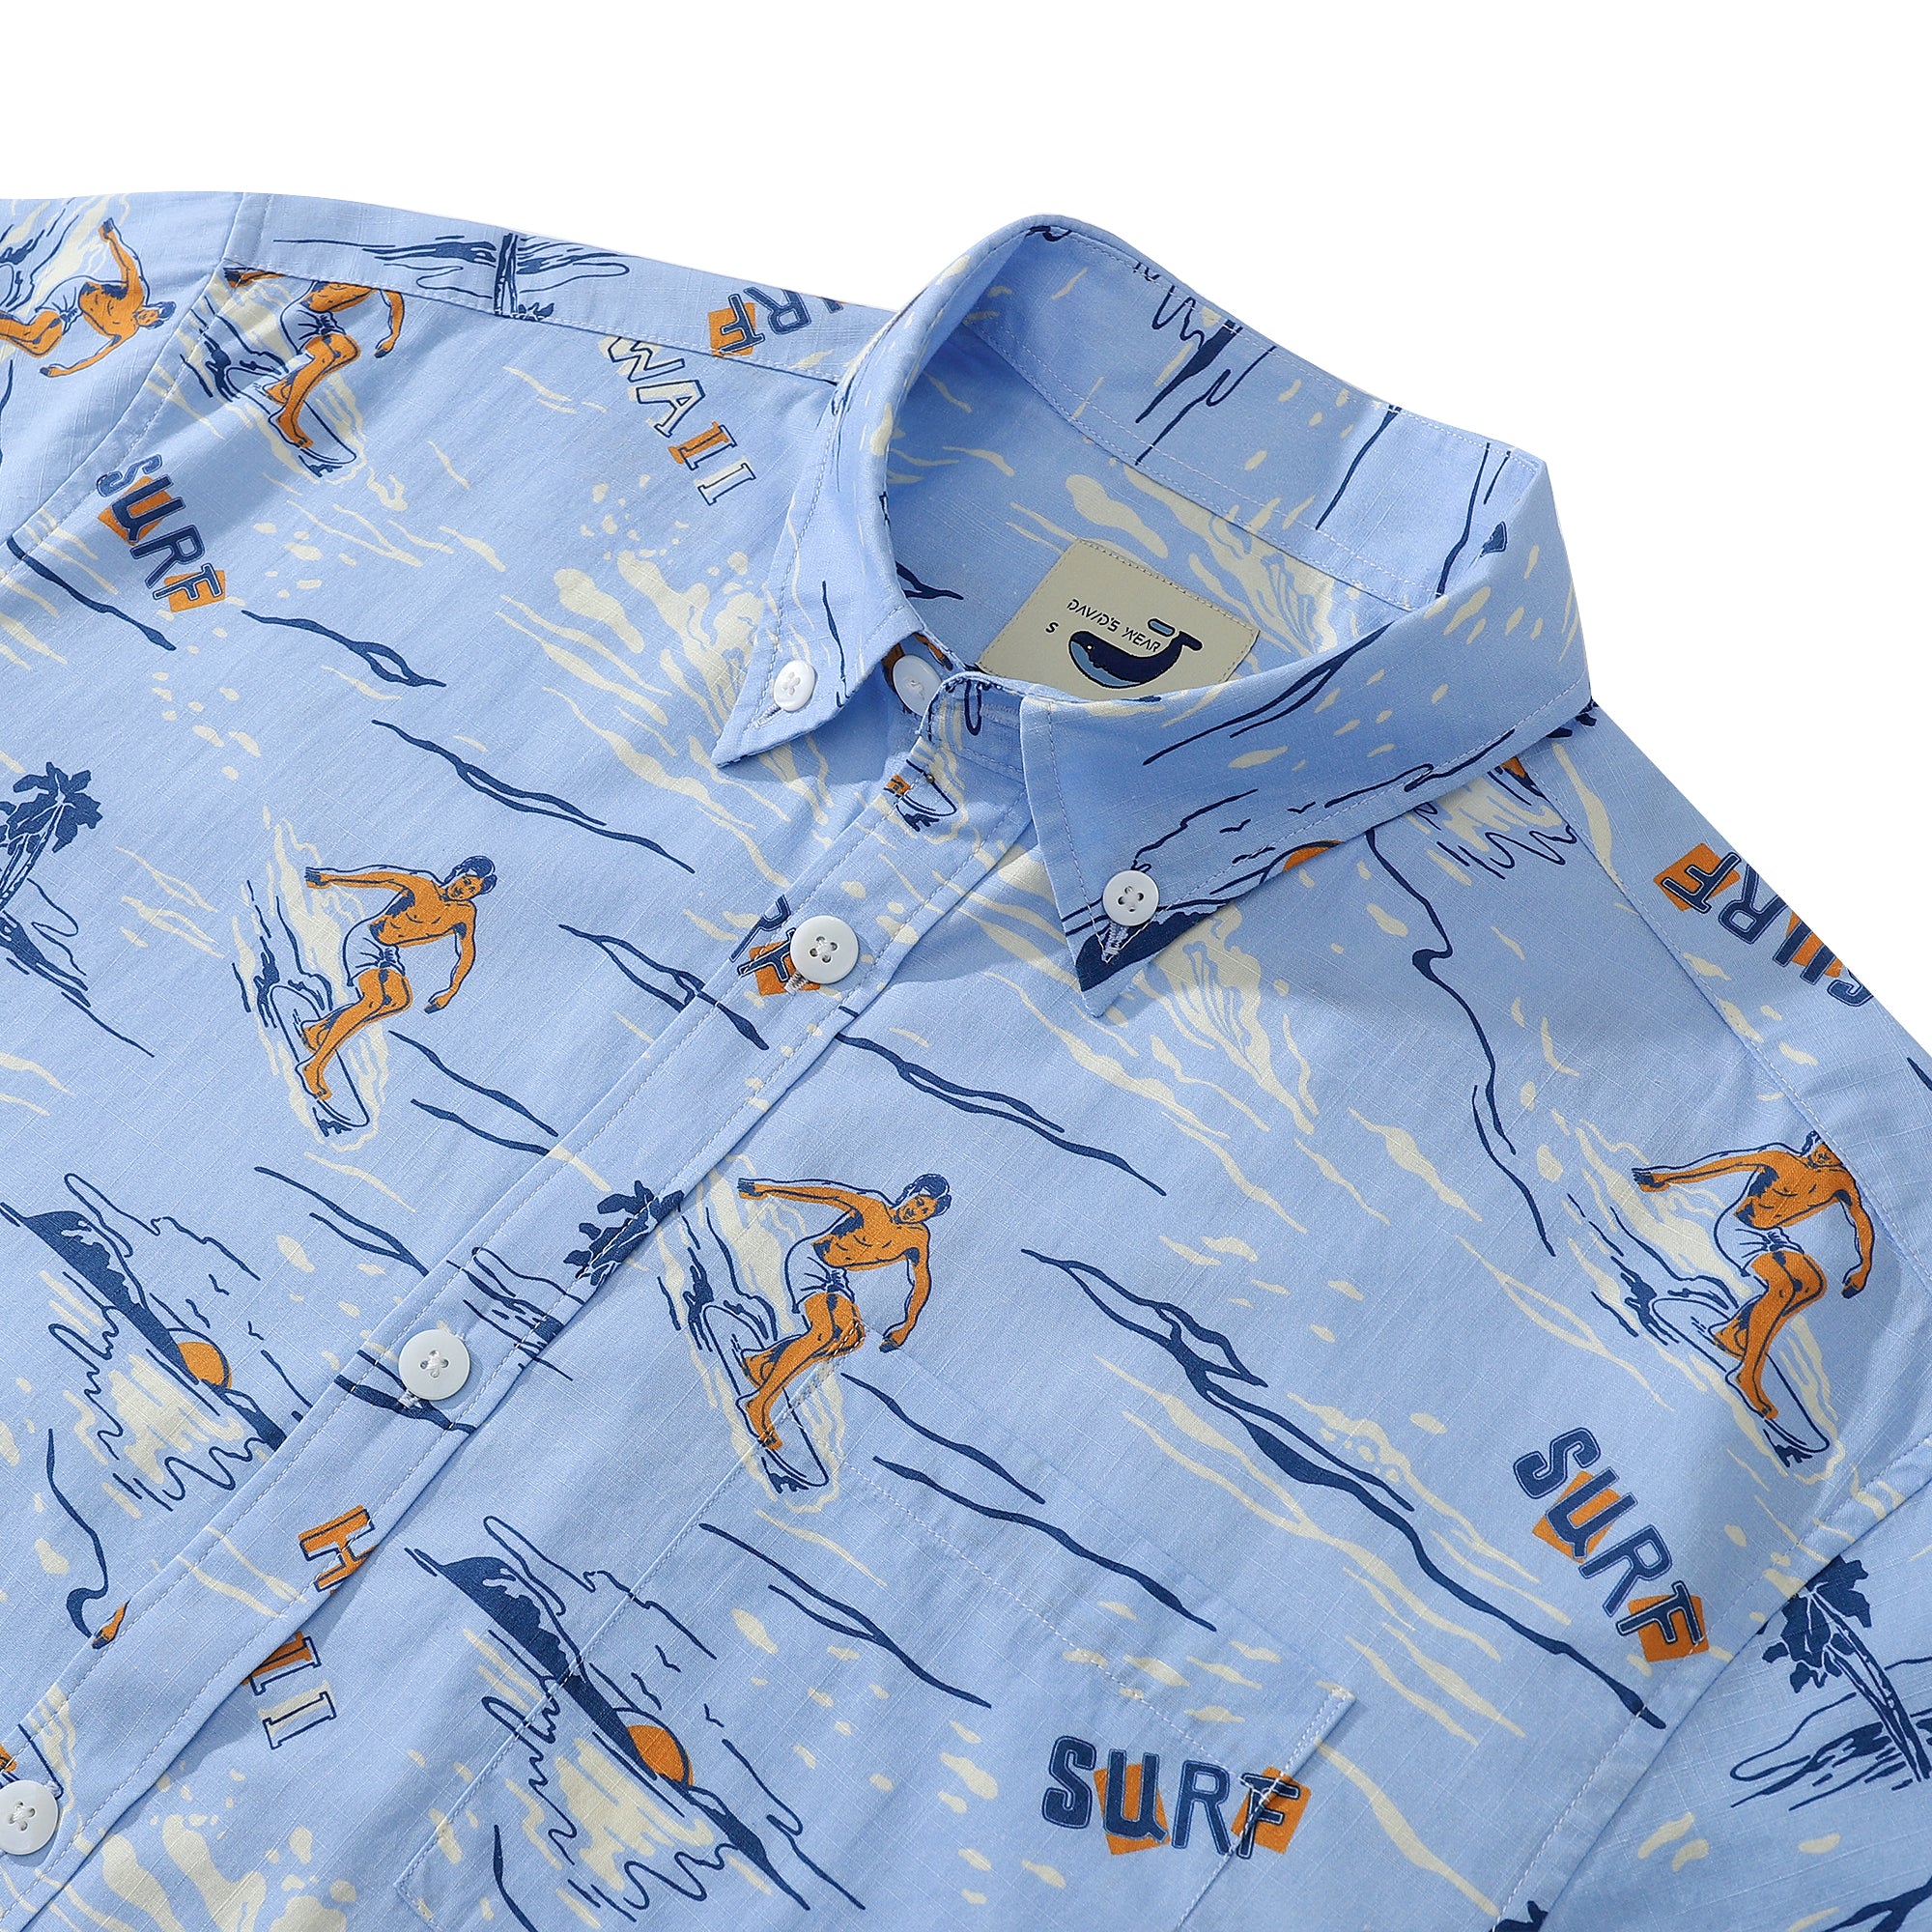 Sunset Surf Light Blue Men's Button-down Shirt 100% Cotton Shell button